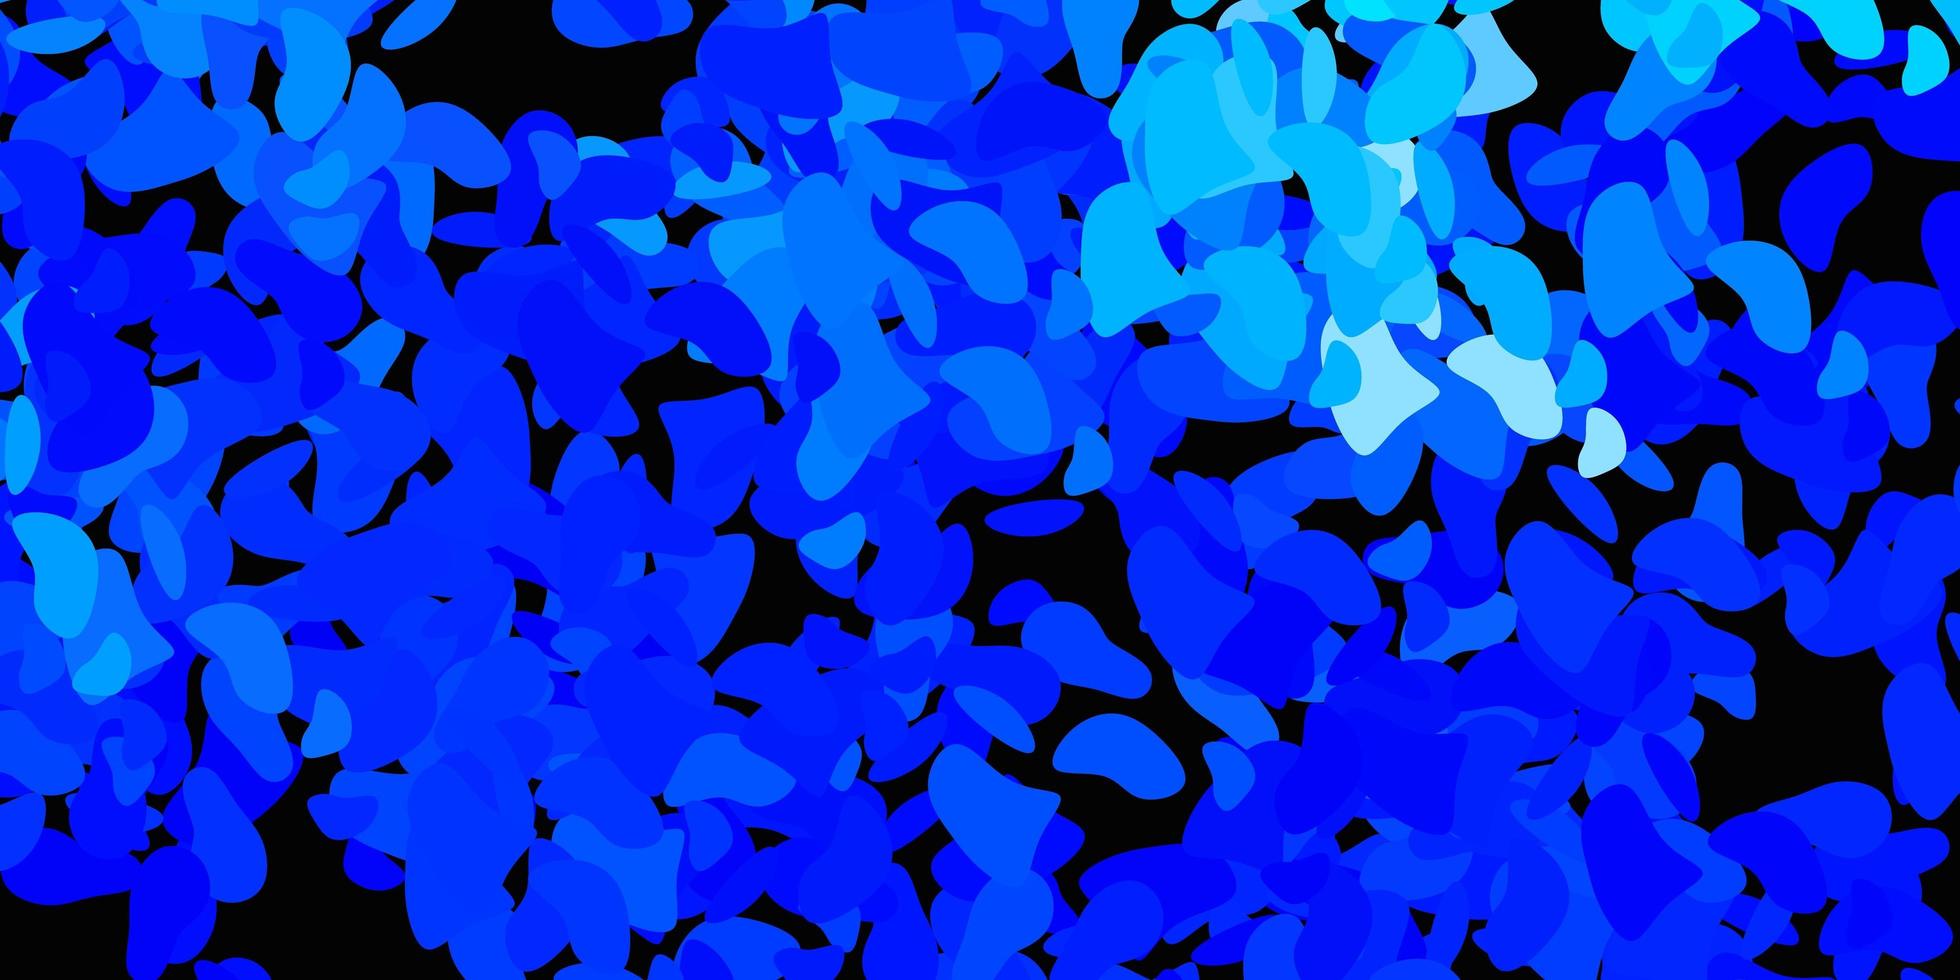 sfondo vettoriale azzurro con forme caotiche.